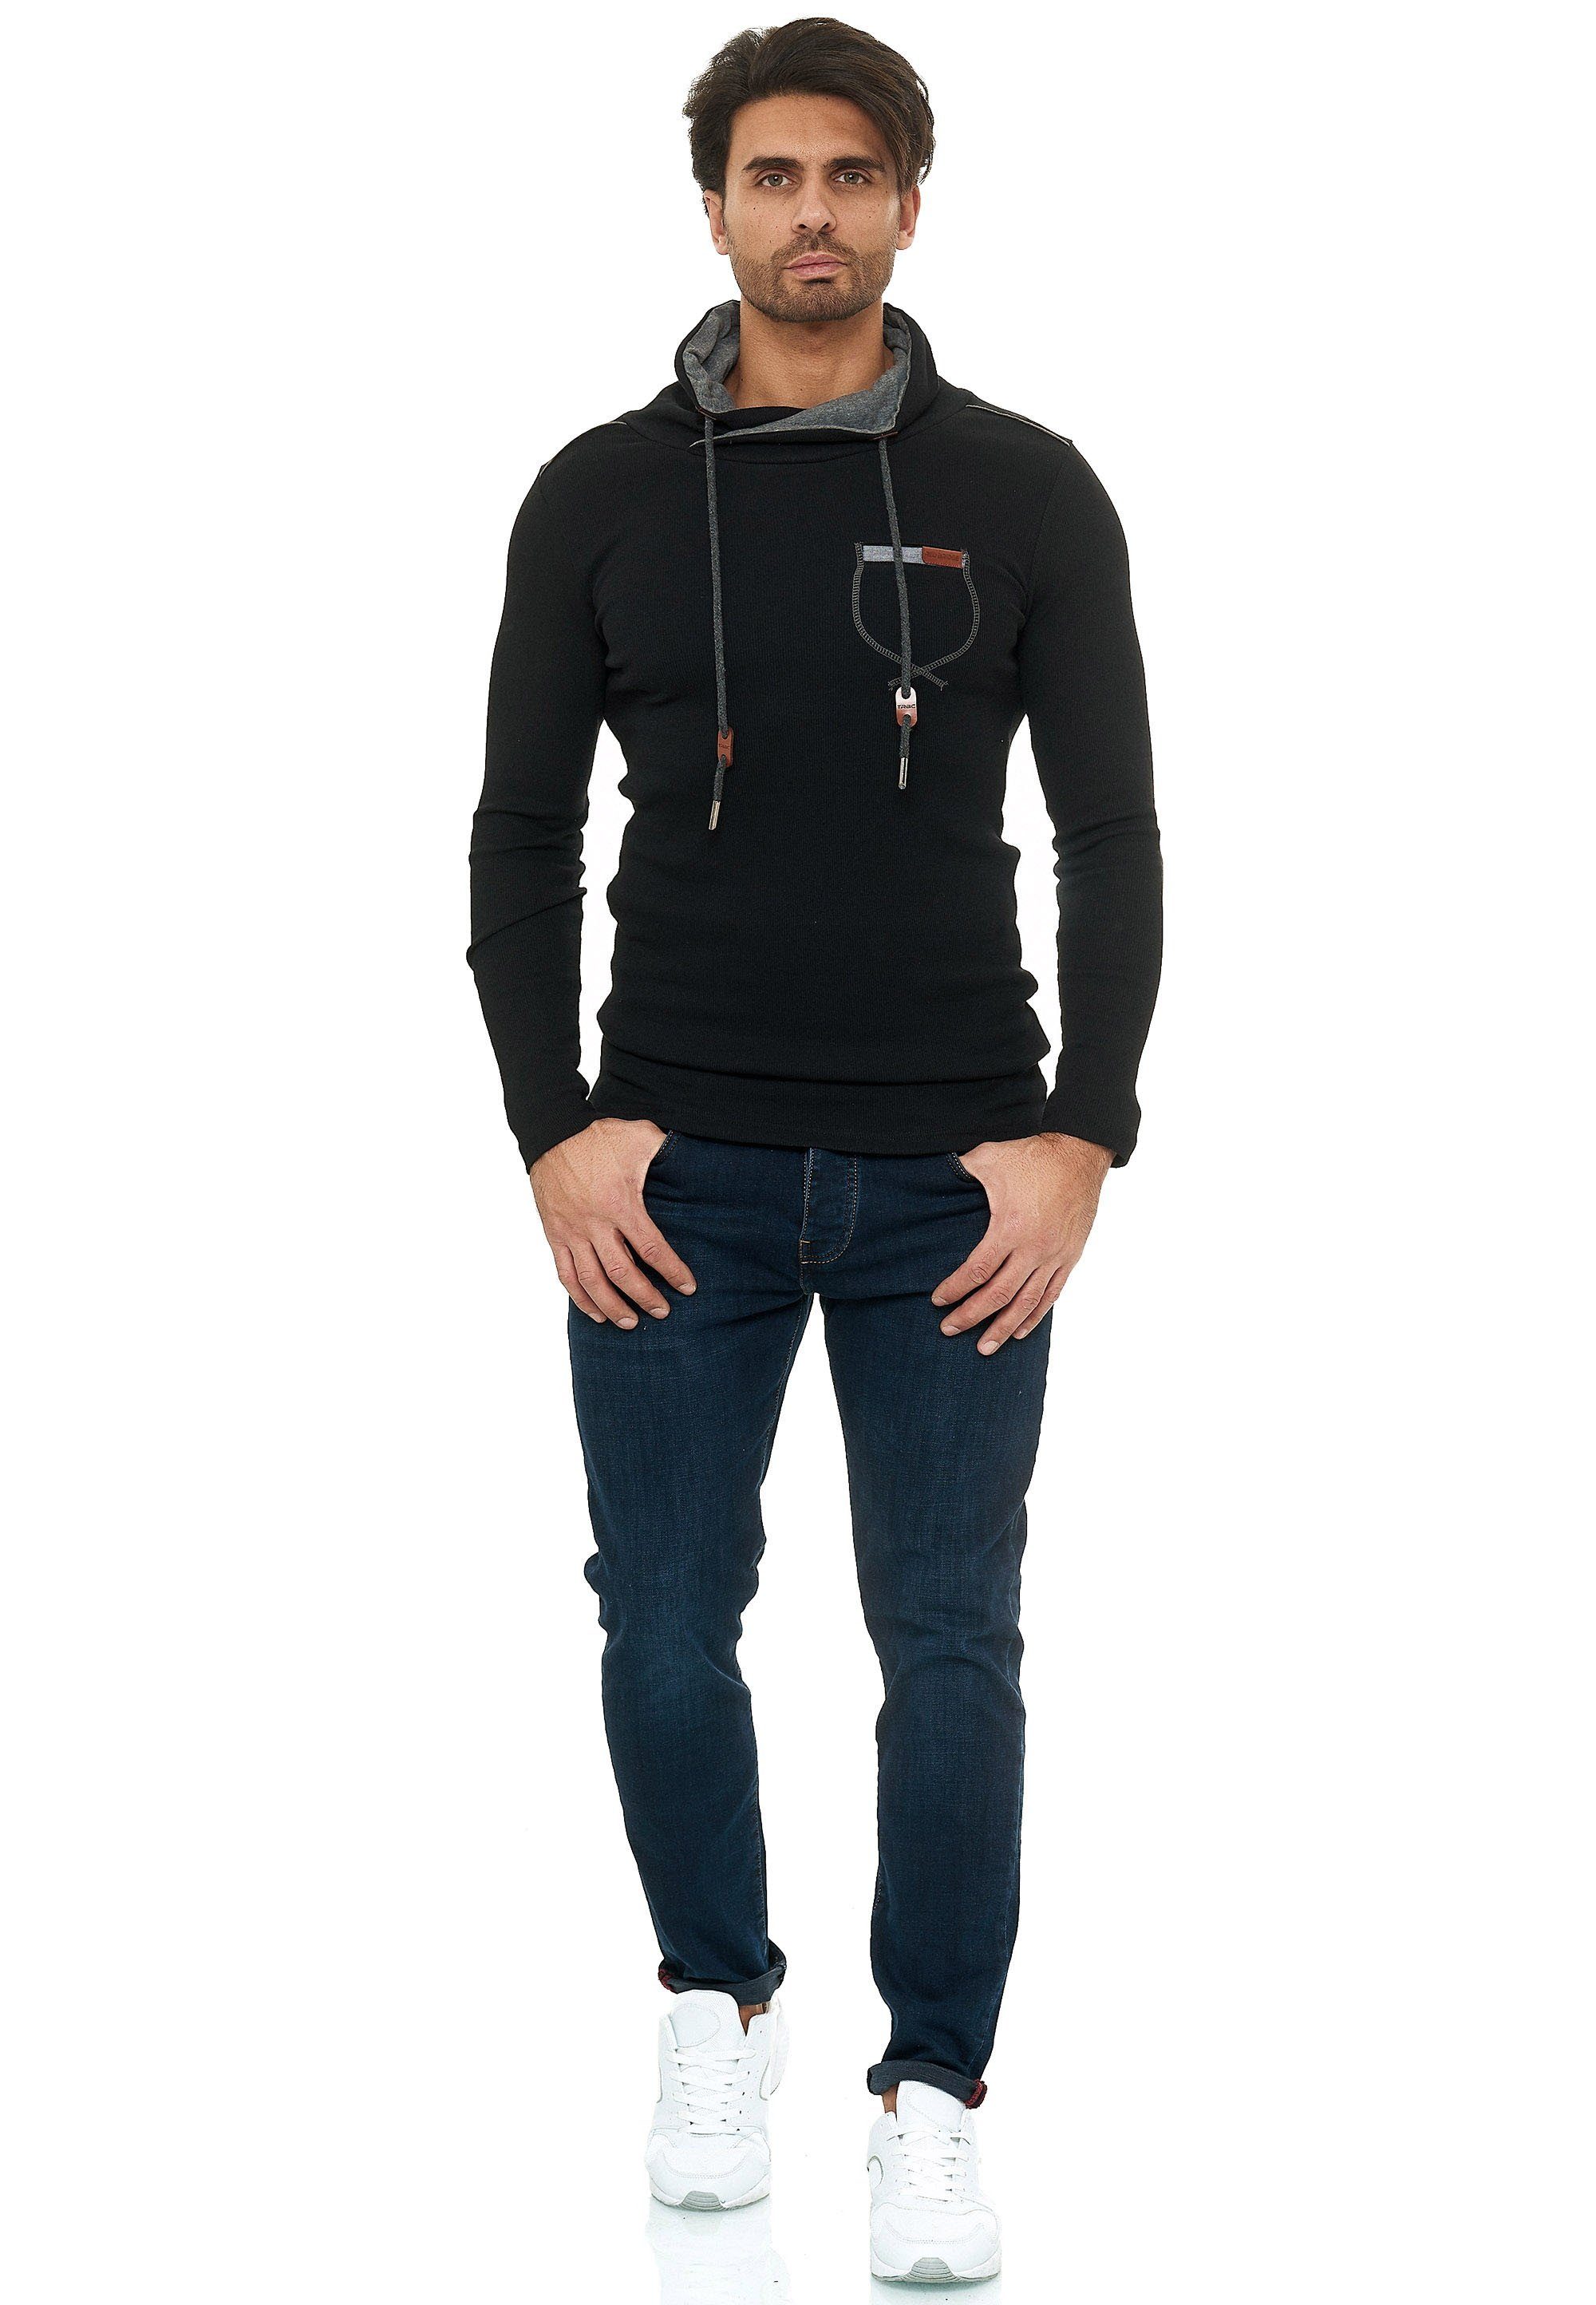 RedBridge Sweatshirt Santa Rosa mit hohem Kragen schwarz